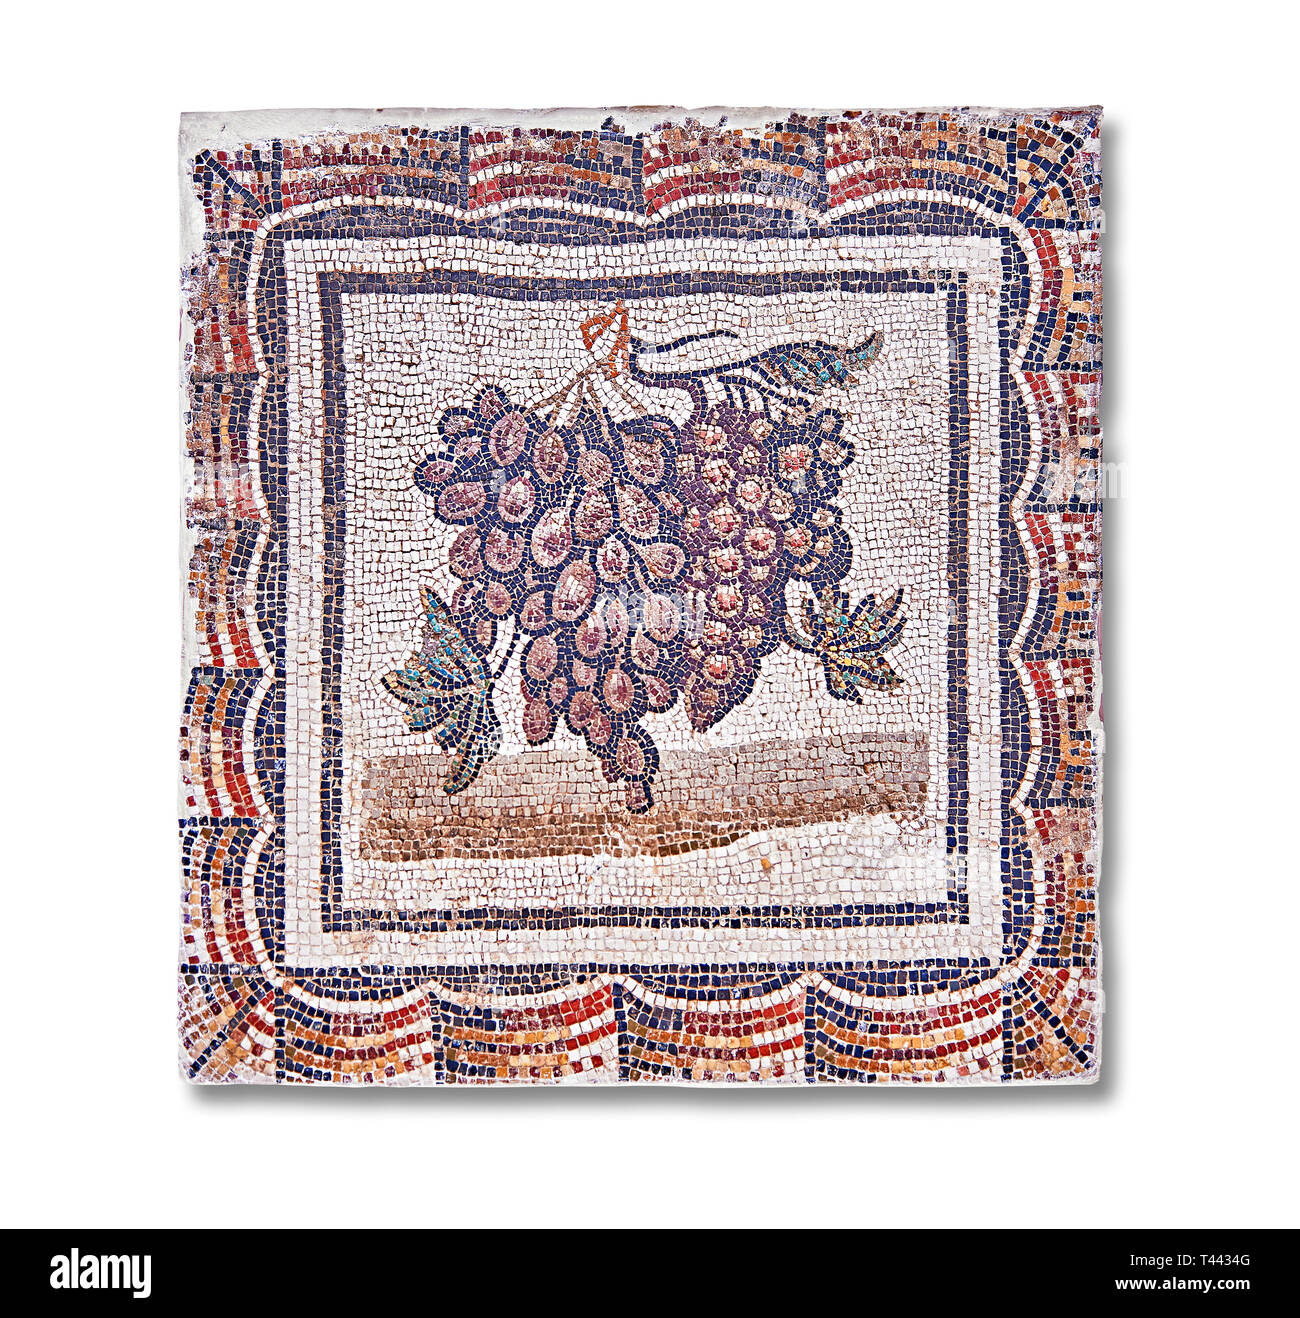 3e siècle mosaïque romaine de bord de raisins noirs et blancs. De Thysdrus (El Jem), Tunisie. Le Musée du Bardo, Tunis, Tunisie. Banque D'Images